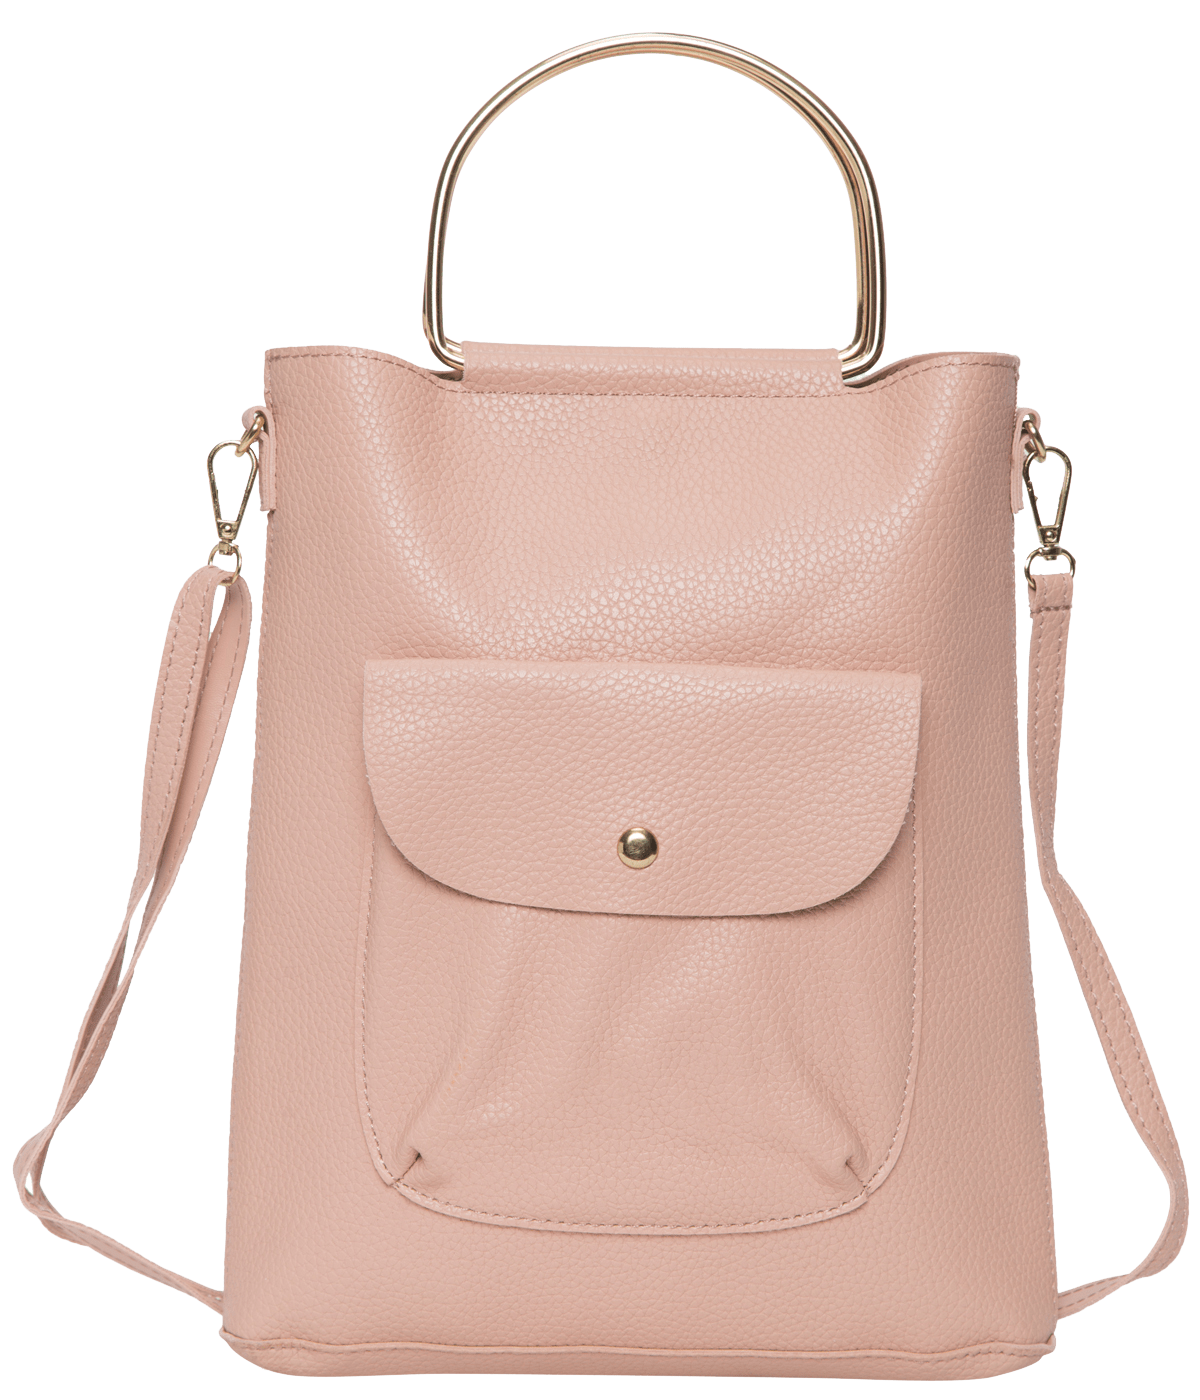 kinnoti Pink Metal Handle Handbag